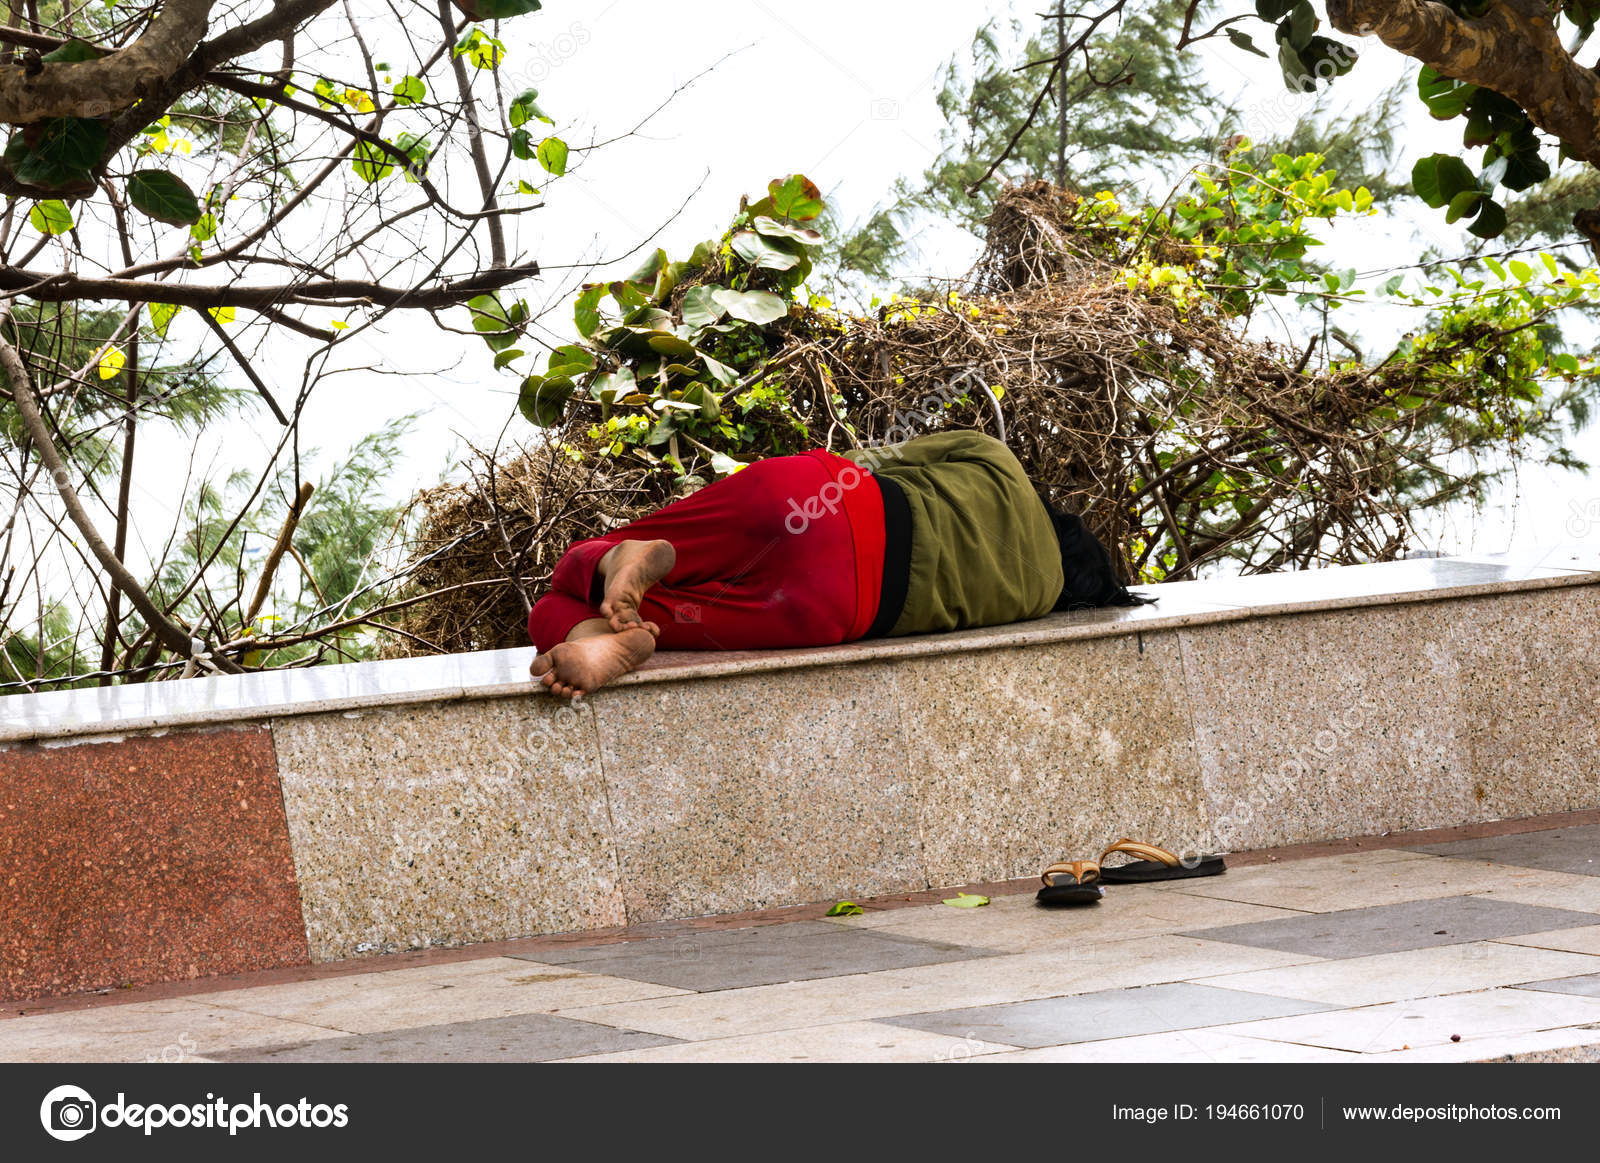 Азиатка бомж. Бездомные Индии спят на улице. Девушка бездомная Азия.